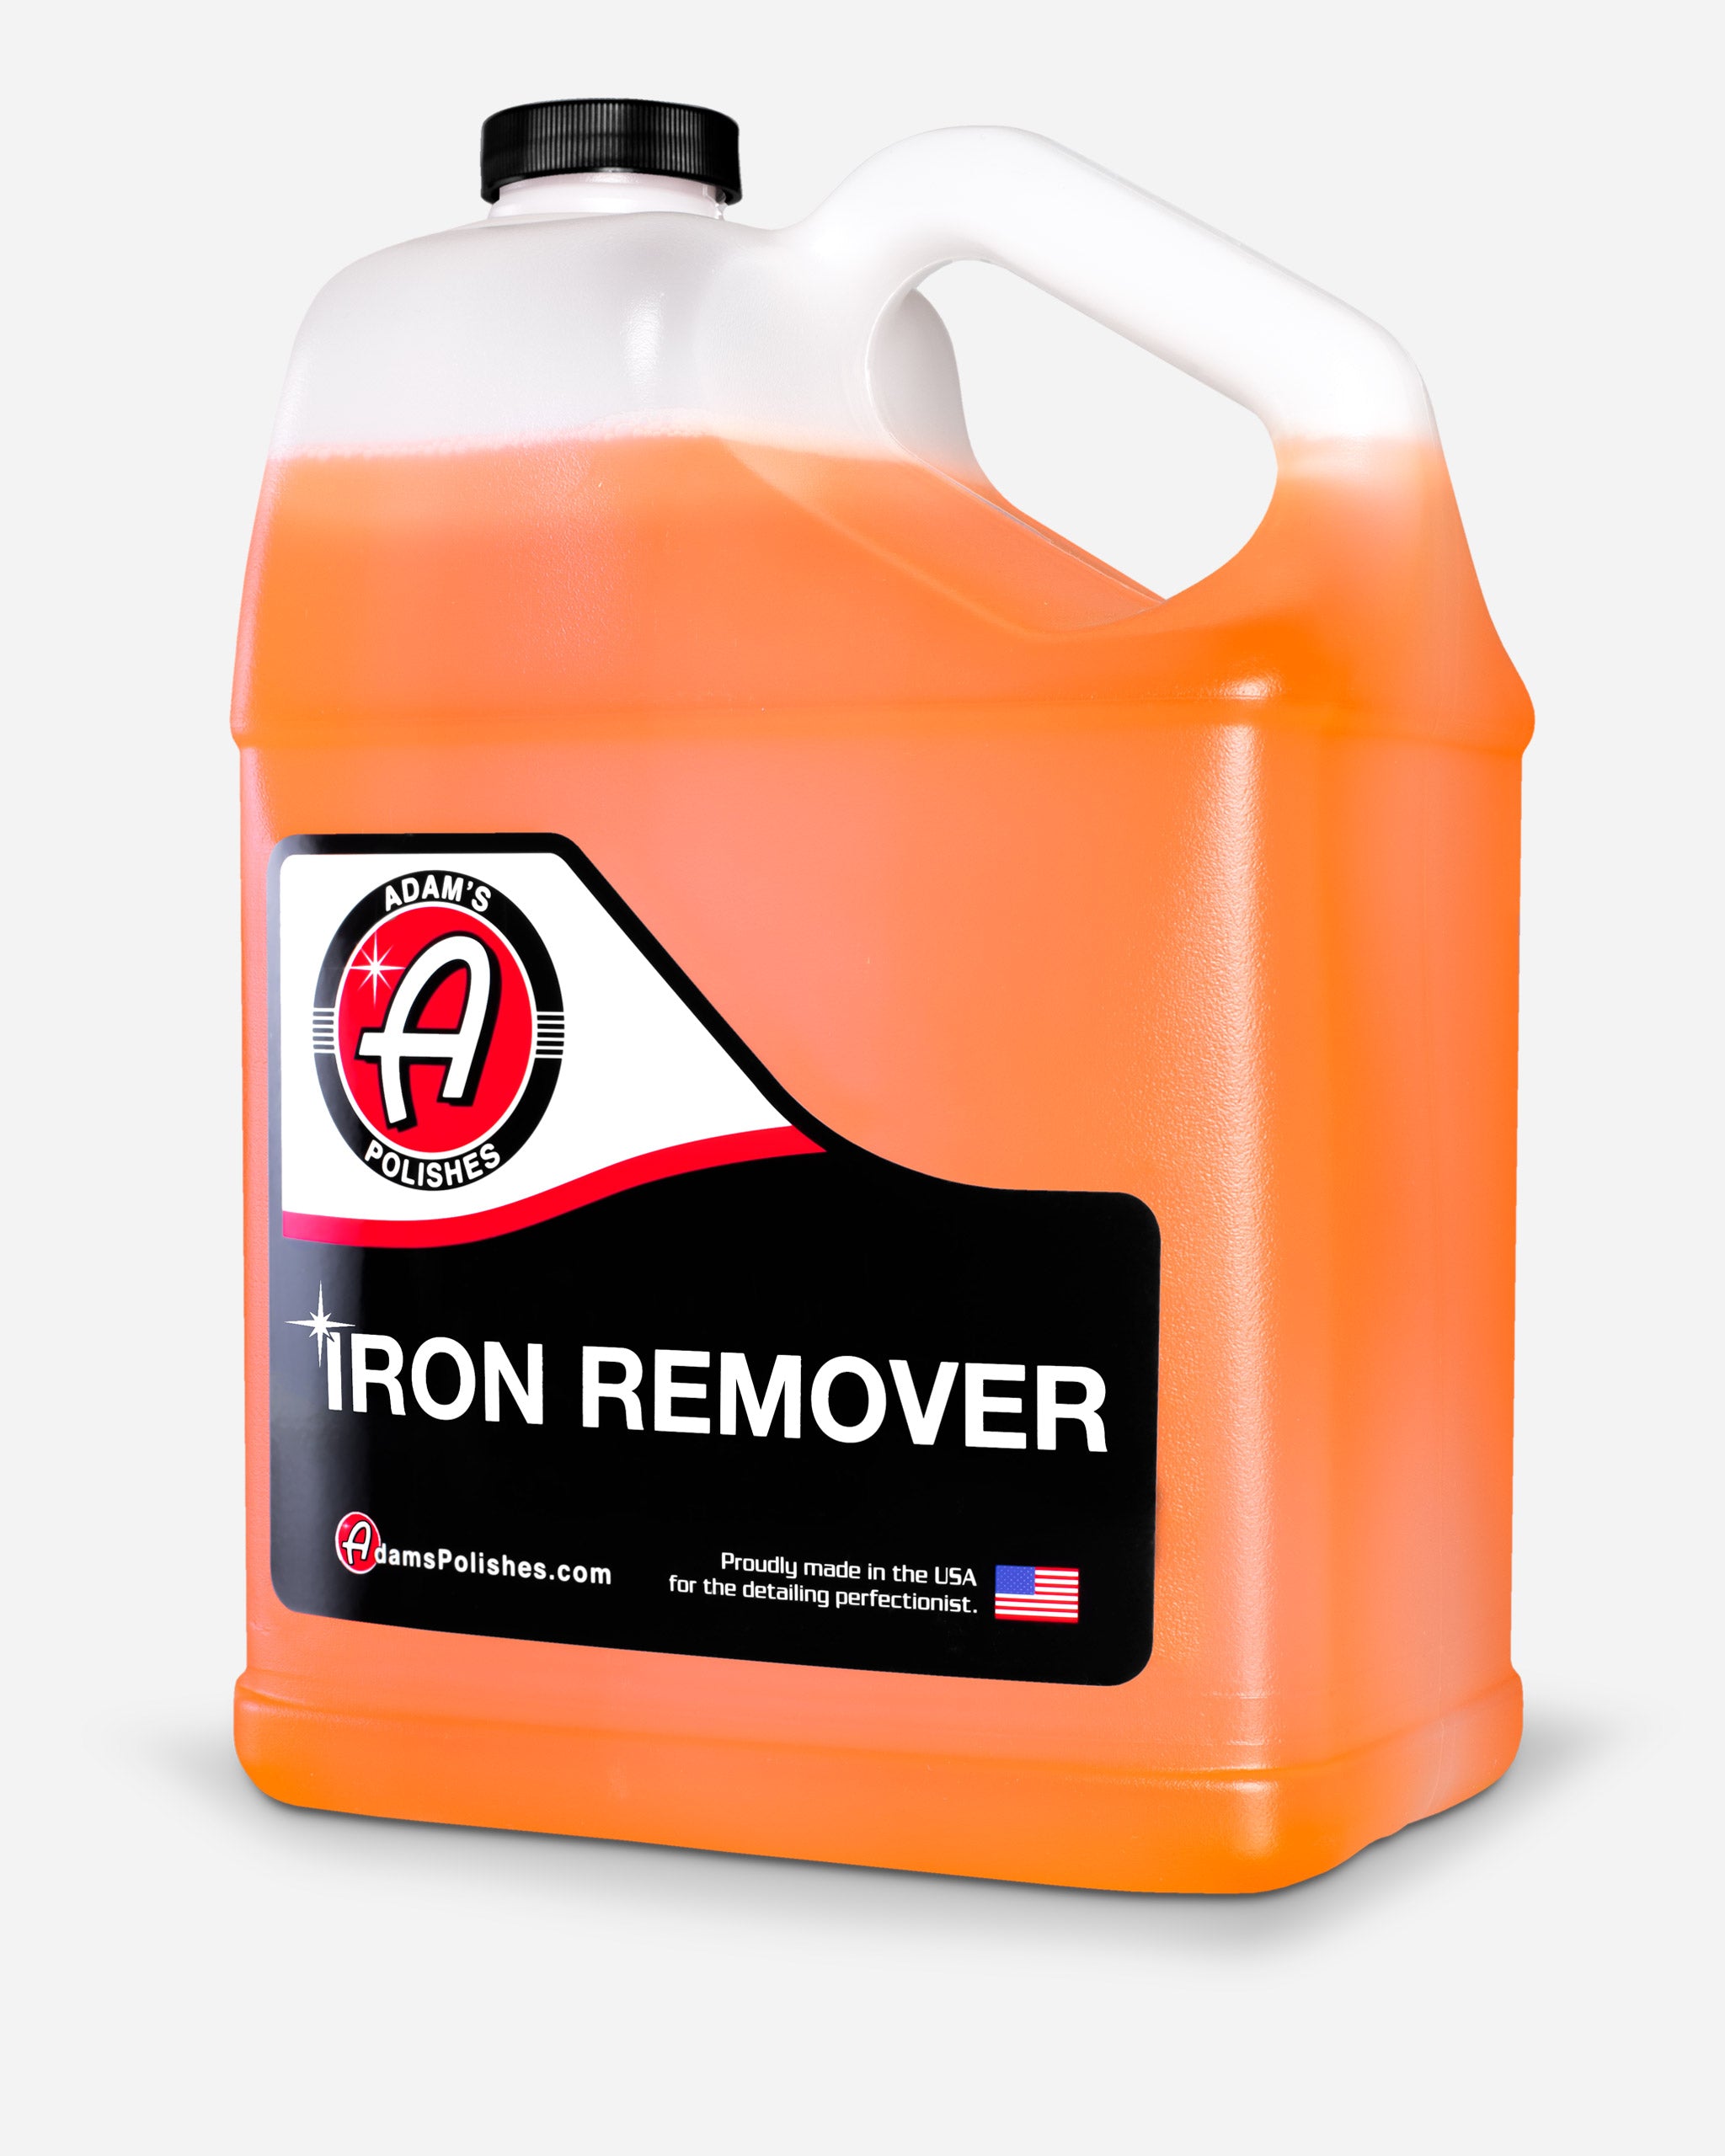 Adam's Iron Remover